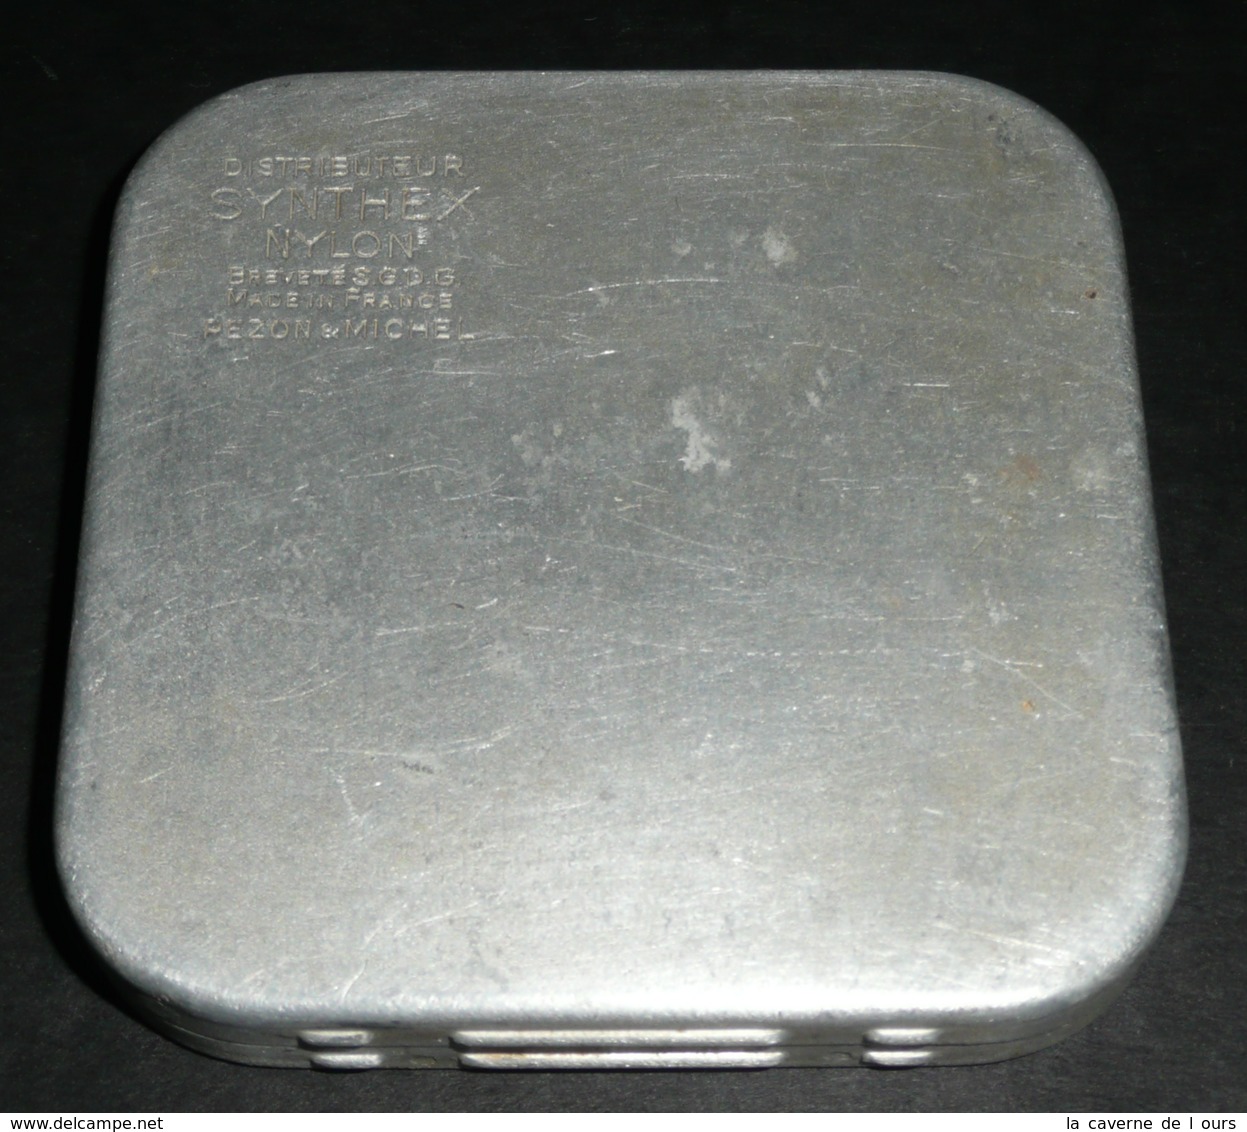 Rare Ancienne Boite En Aluminium Alu, Publicitaire, Distributeur SYNTHEX Nylon, Bté SGDG France Pezon & Michel, Pêche - Dosen